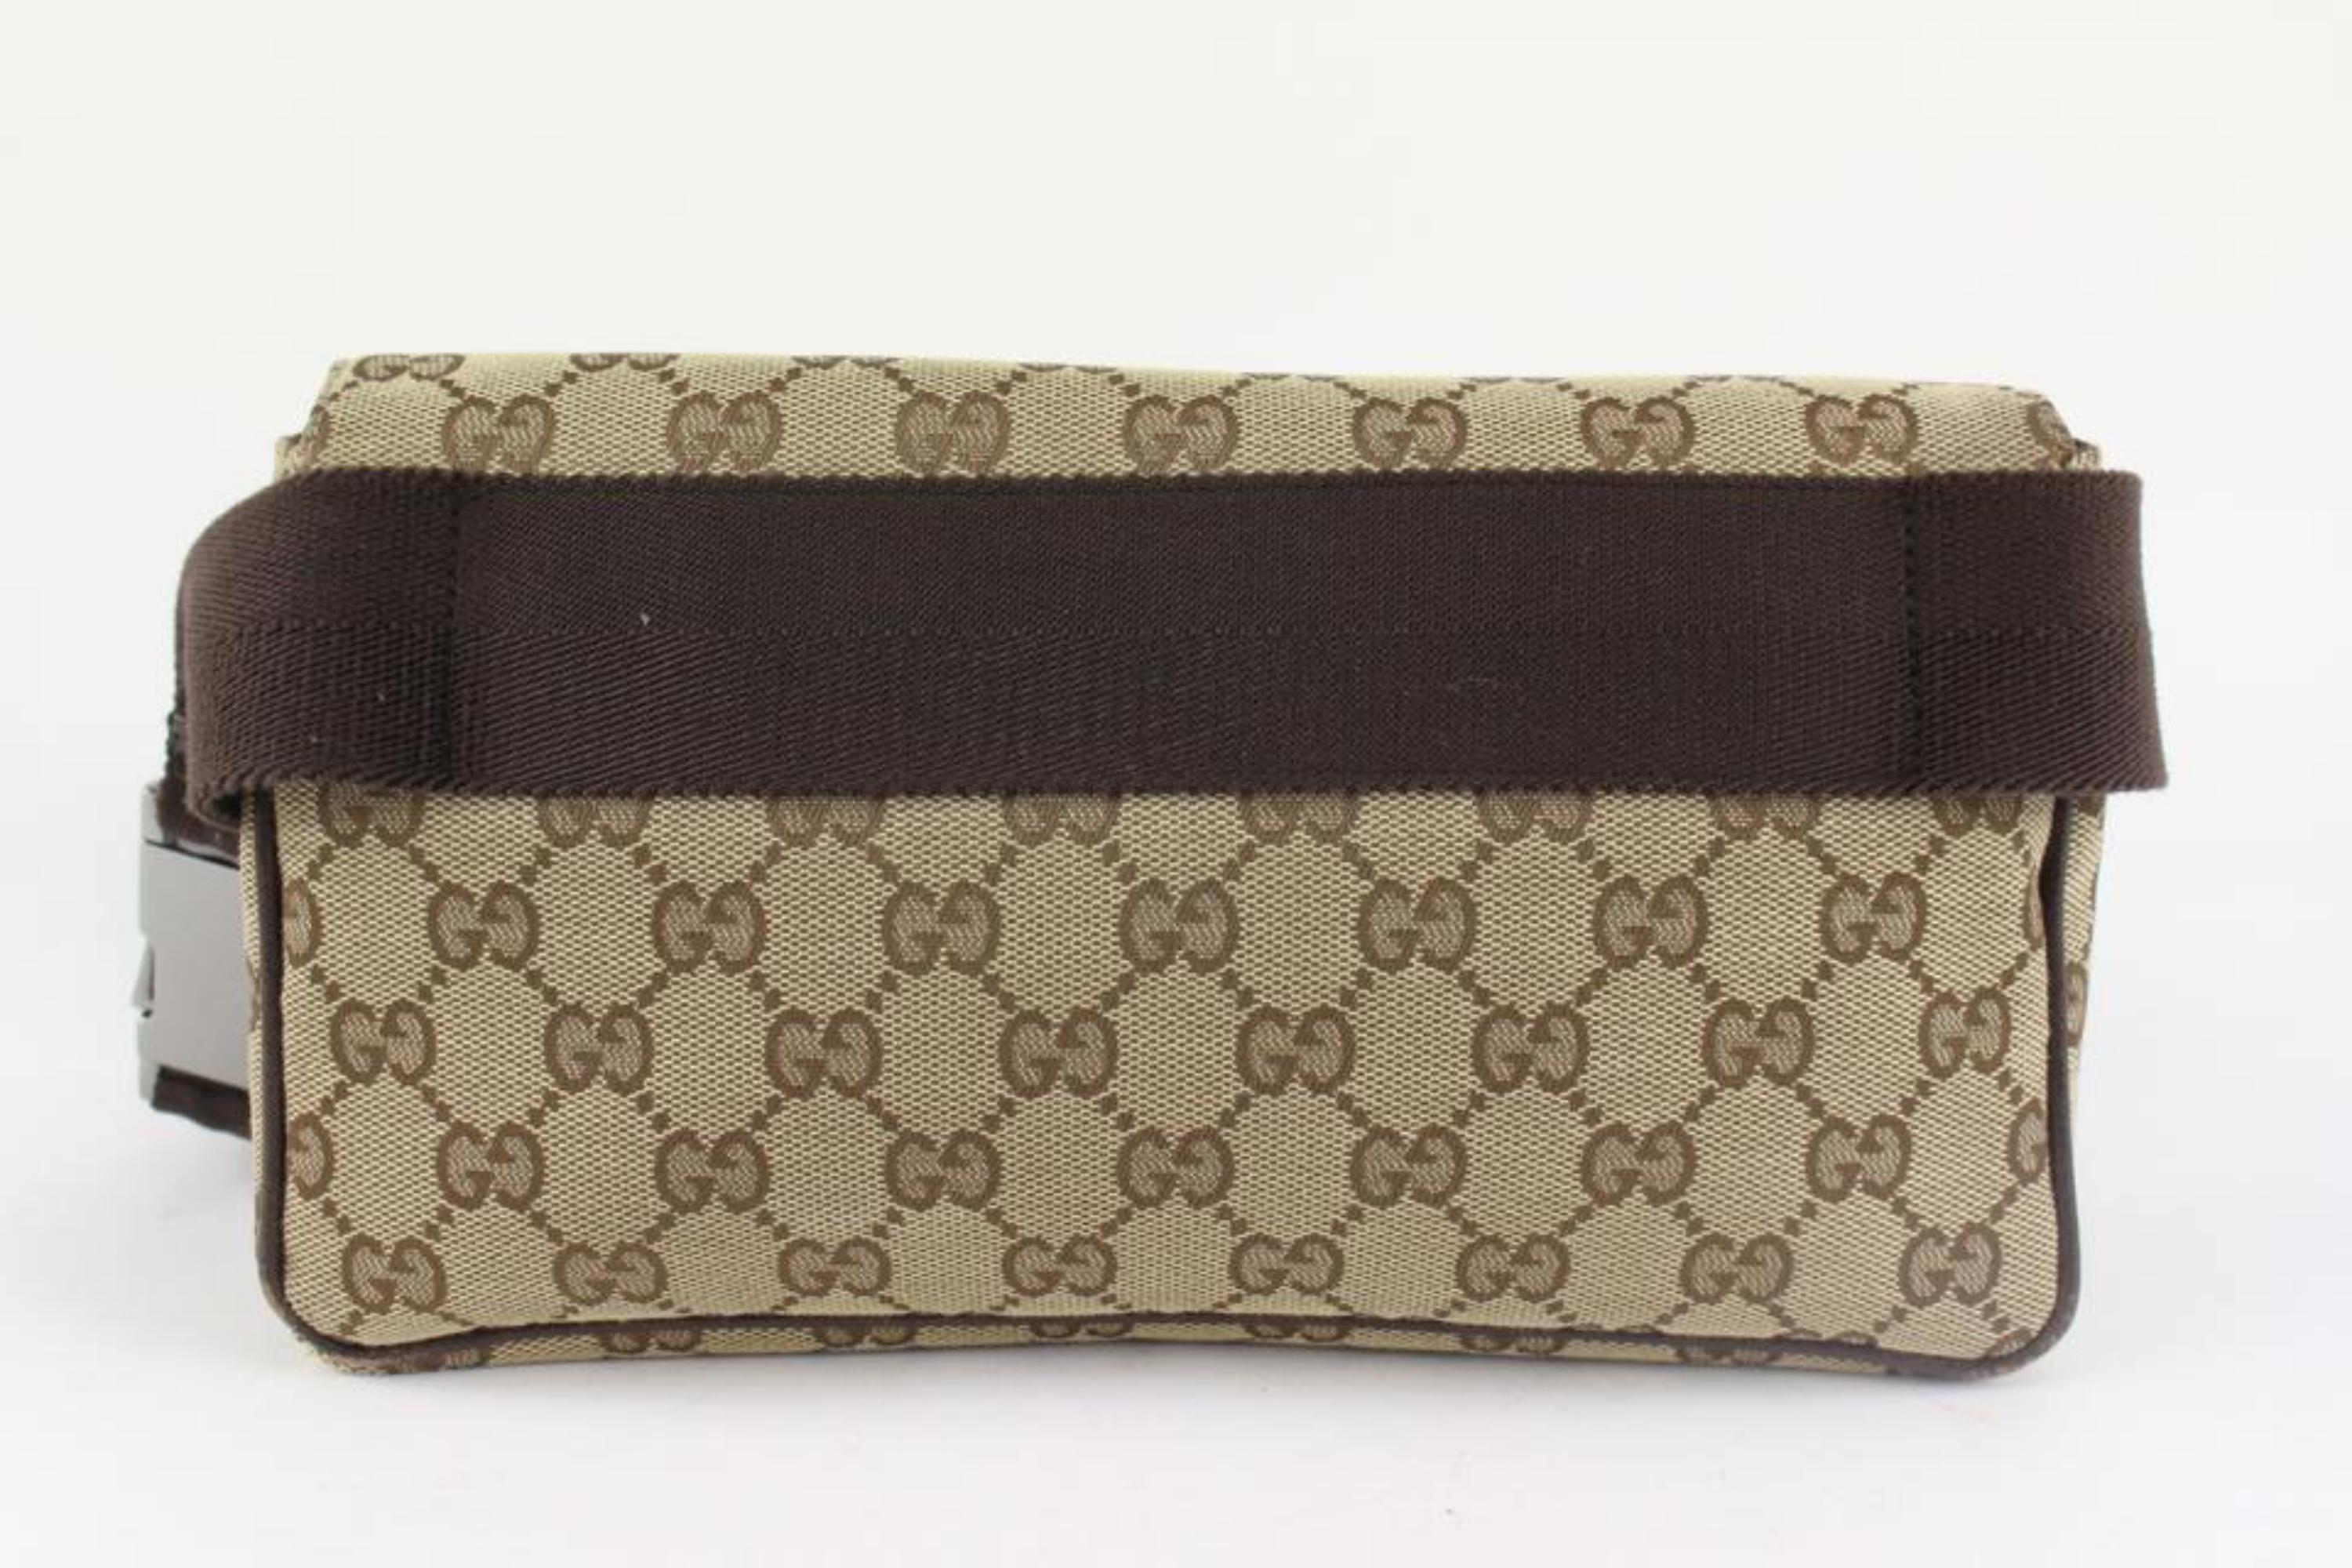 Gucci Monogram GG Flap Belt Bag Fanny Pack Waist Pouch 1215g46 2